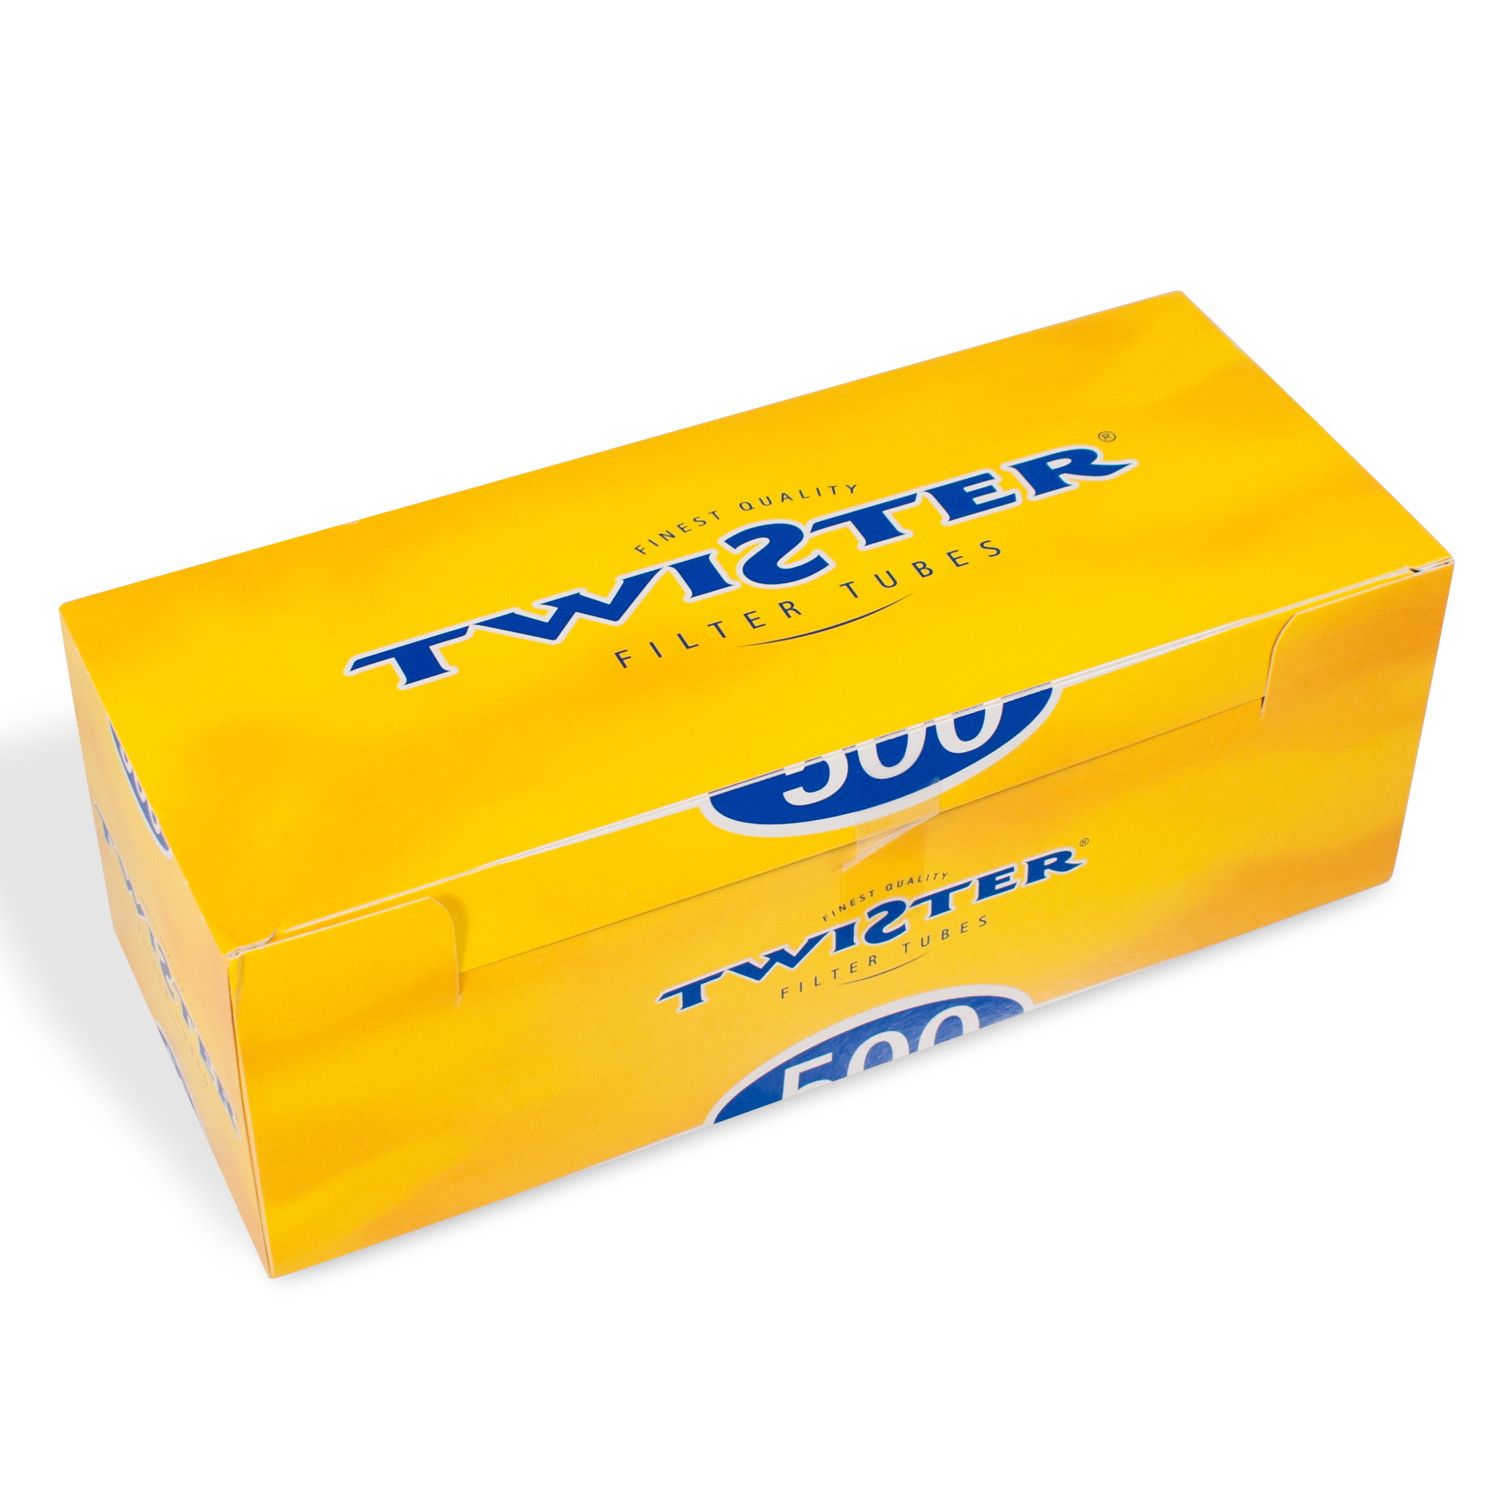 Twister Hülsen - 10.000 Stück in 20 praktischen Packungen à 500 Stück 